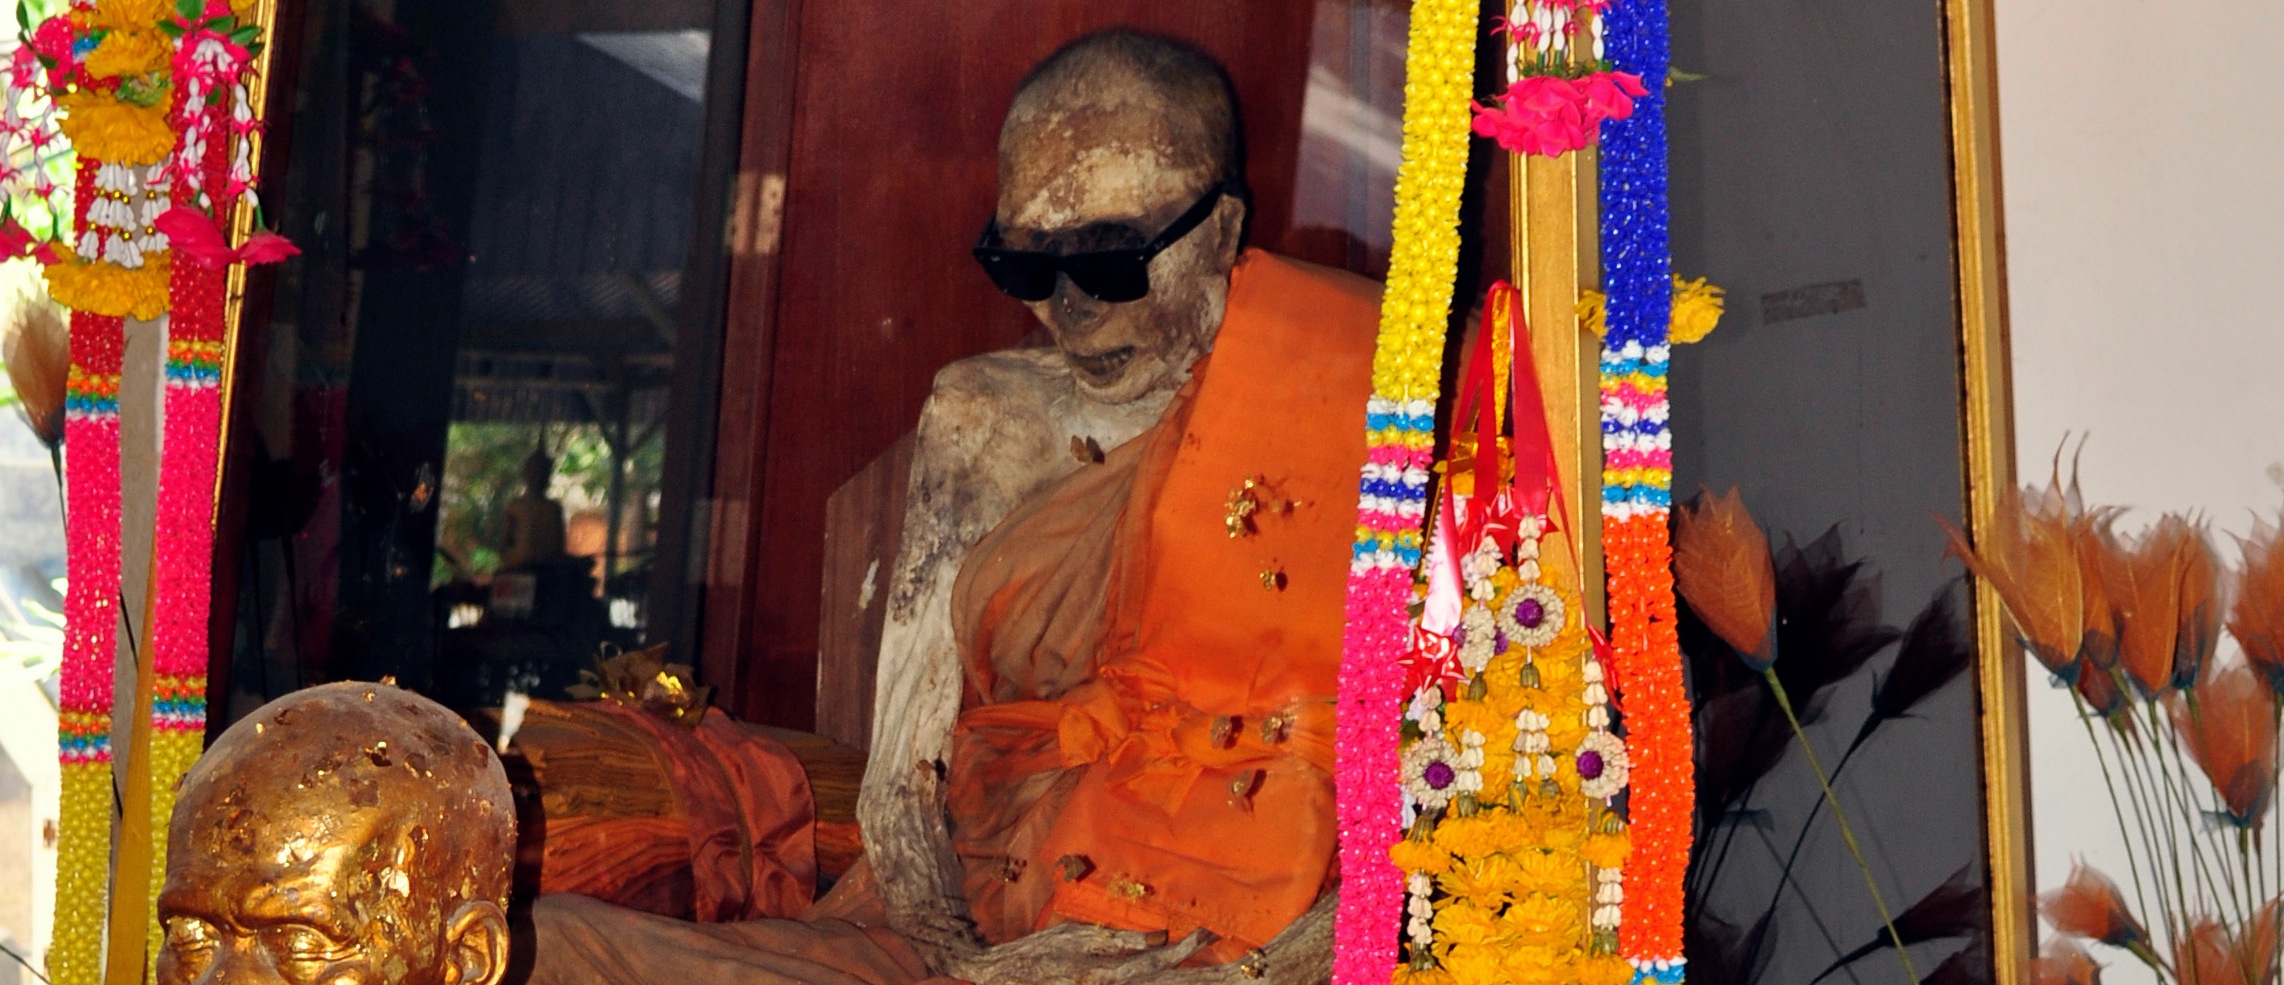 Luang Pho Dang - Luang Phor Daeng - Ko Samui Thailand - Modern Mummies